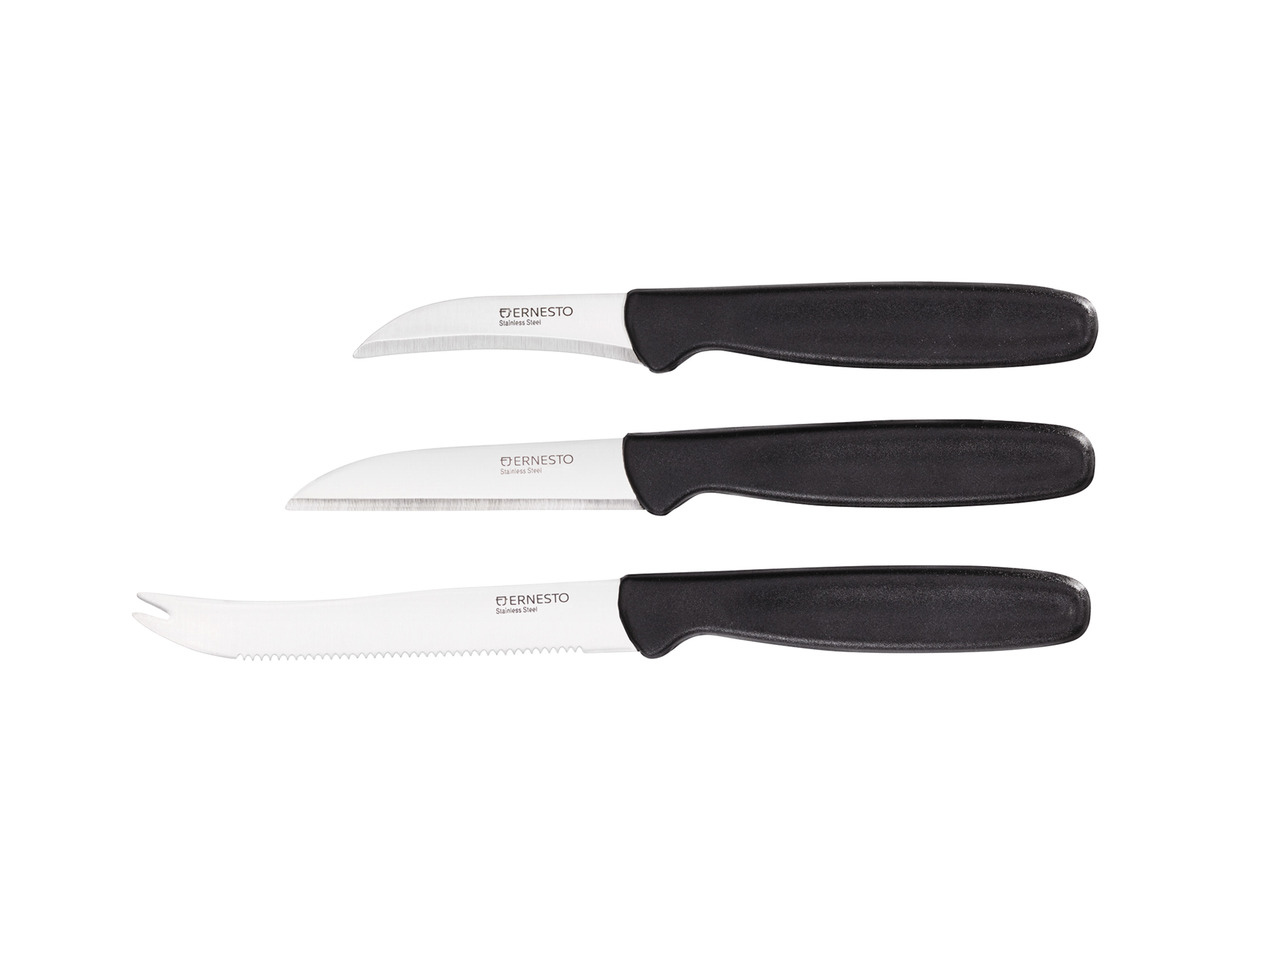 Ernesto Kitchen Knives1